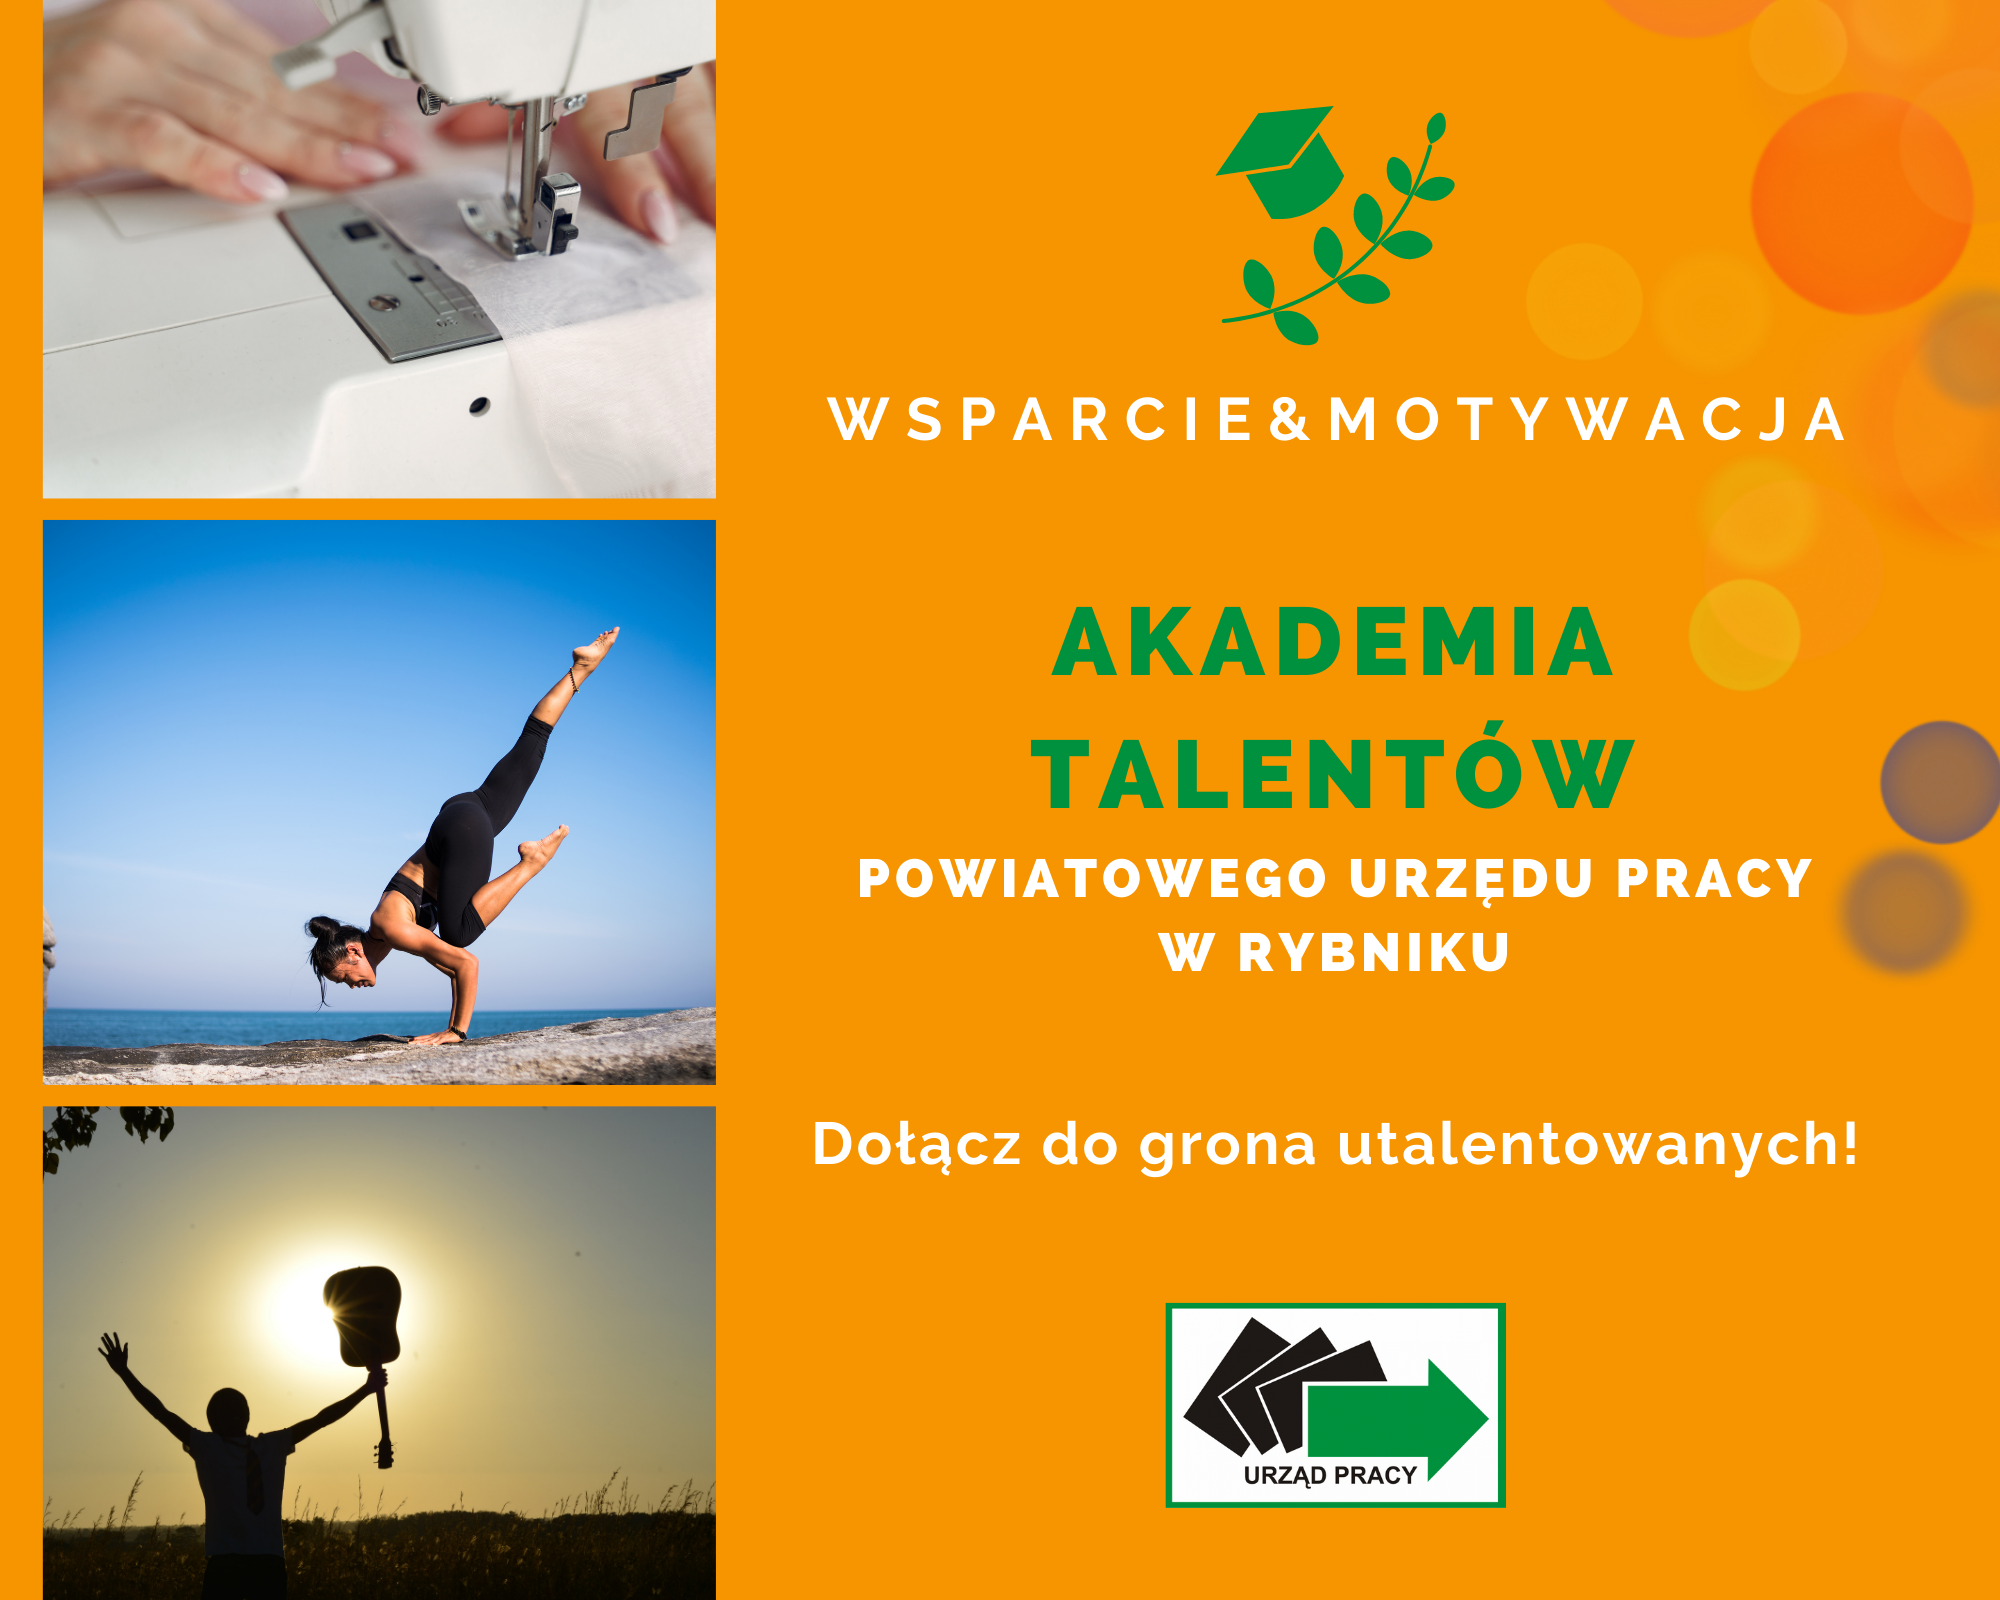 Slajd z treścią: wsparcie&motywacja - Akademia Talentów Powiatowego Urzędu Pracy w Rybniku - dołącz do grona utalentowanych!